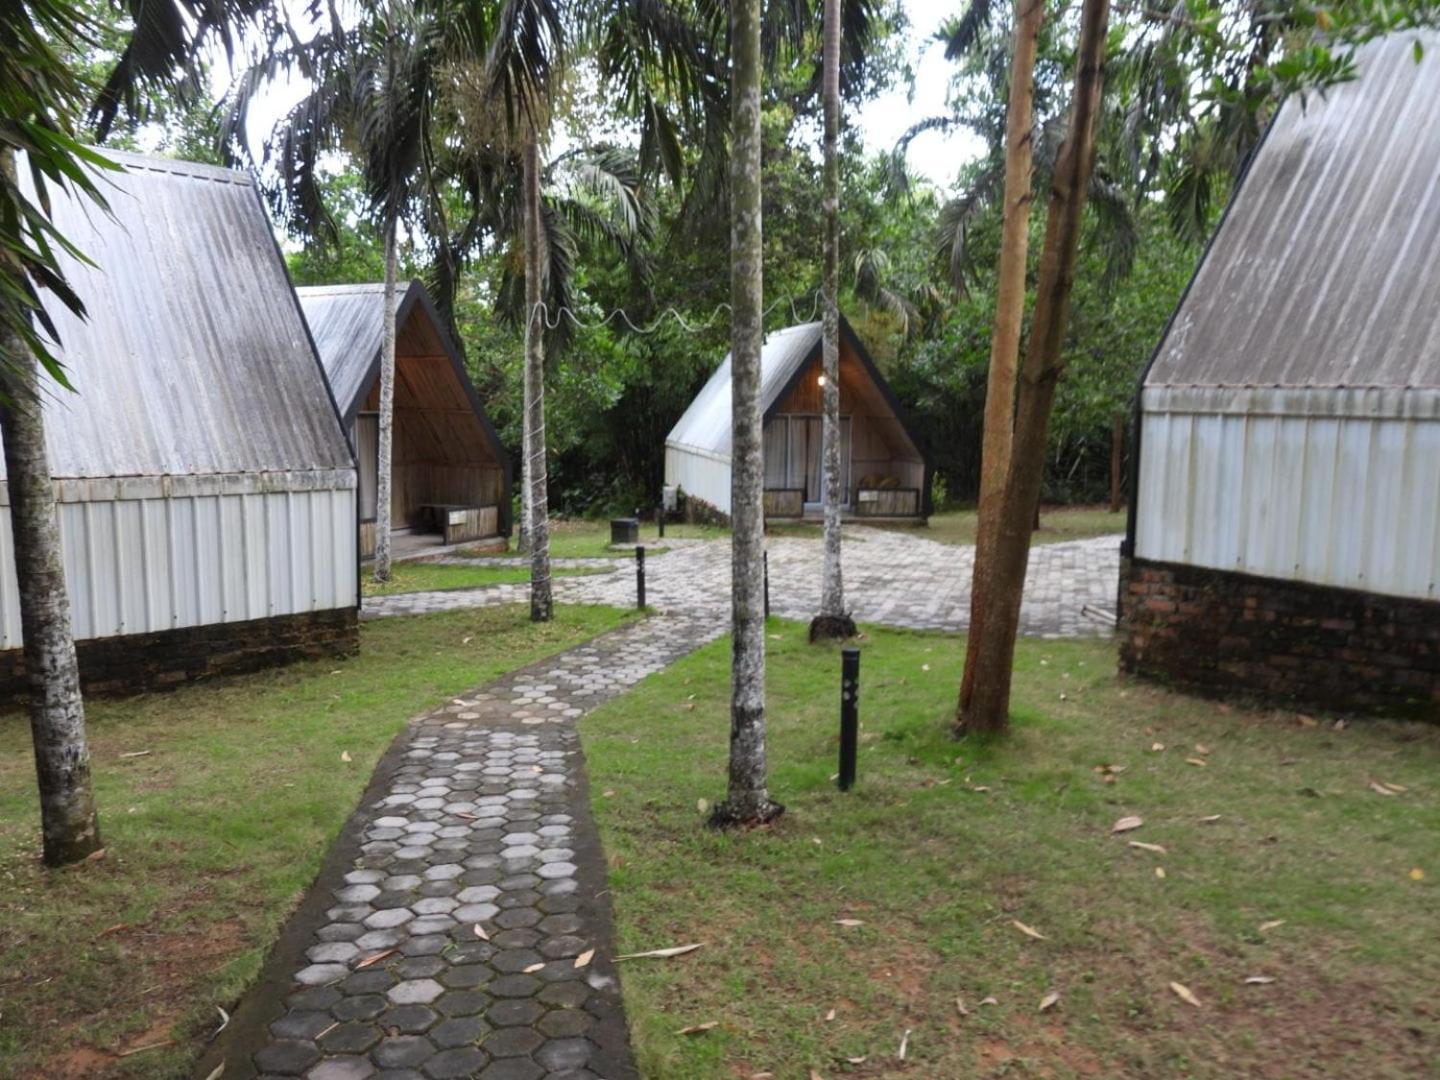 "D'Bamboo Kamp" Desa Wisata Ekang 拉古洼 外观 照片